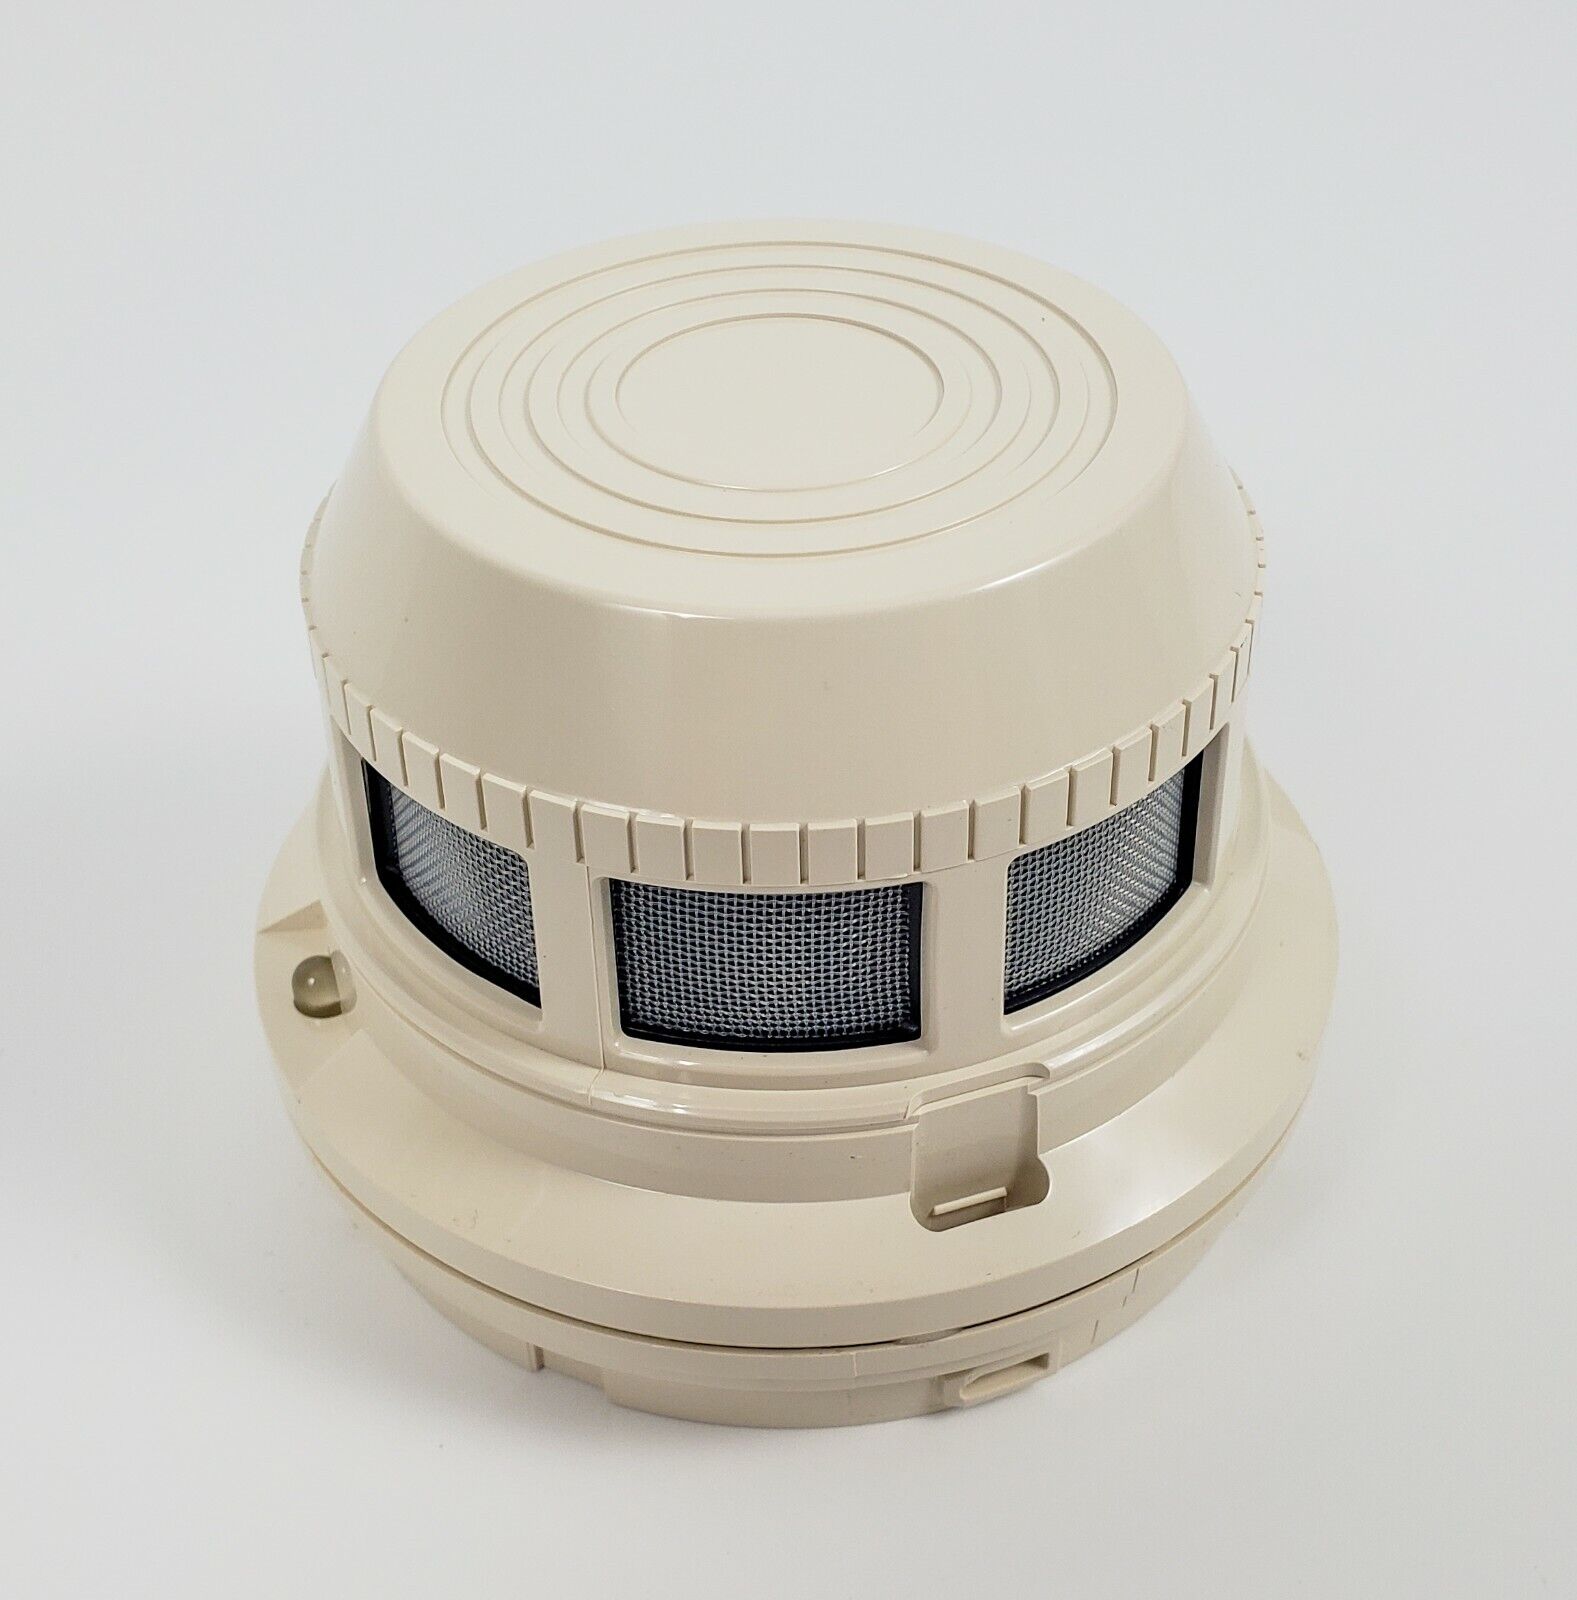 Notifier SDX-551 (417482) Photoelectronic Smoke Detector - NEW